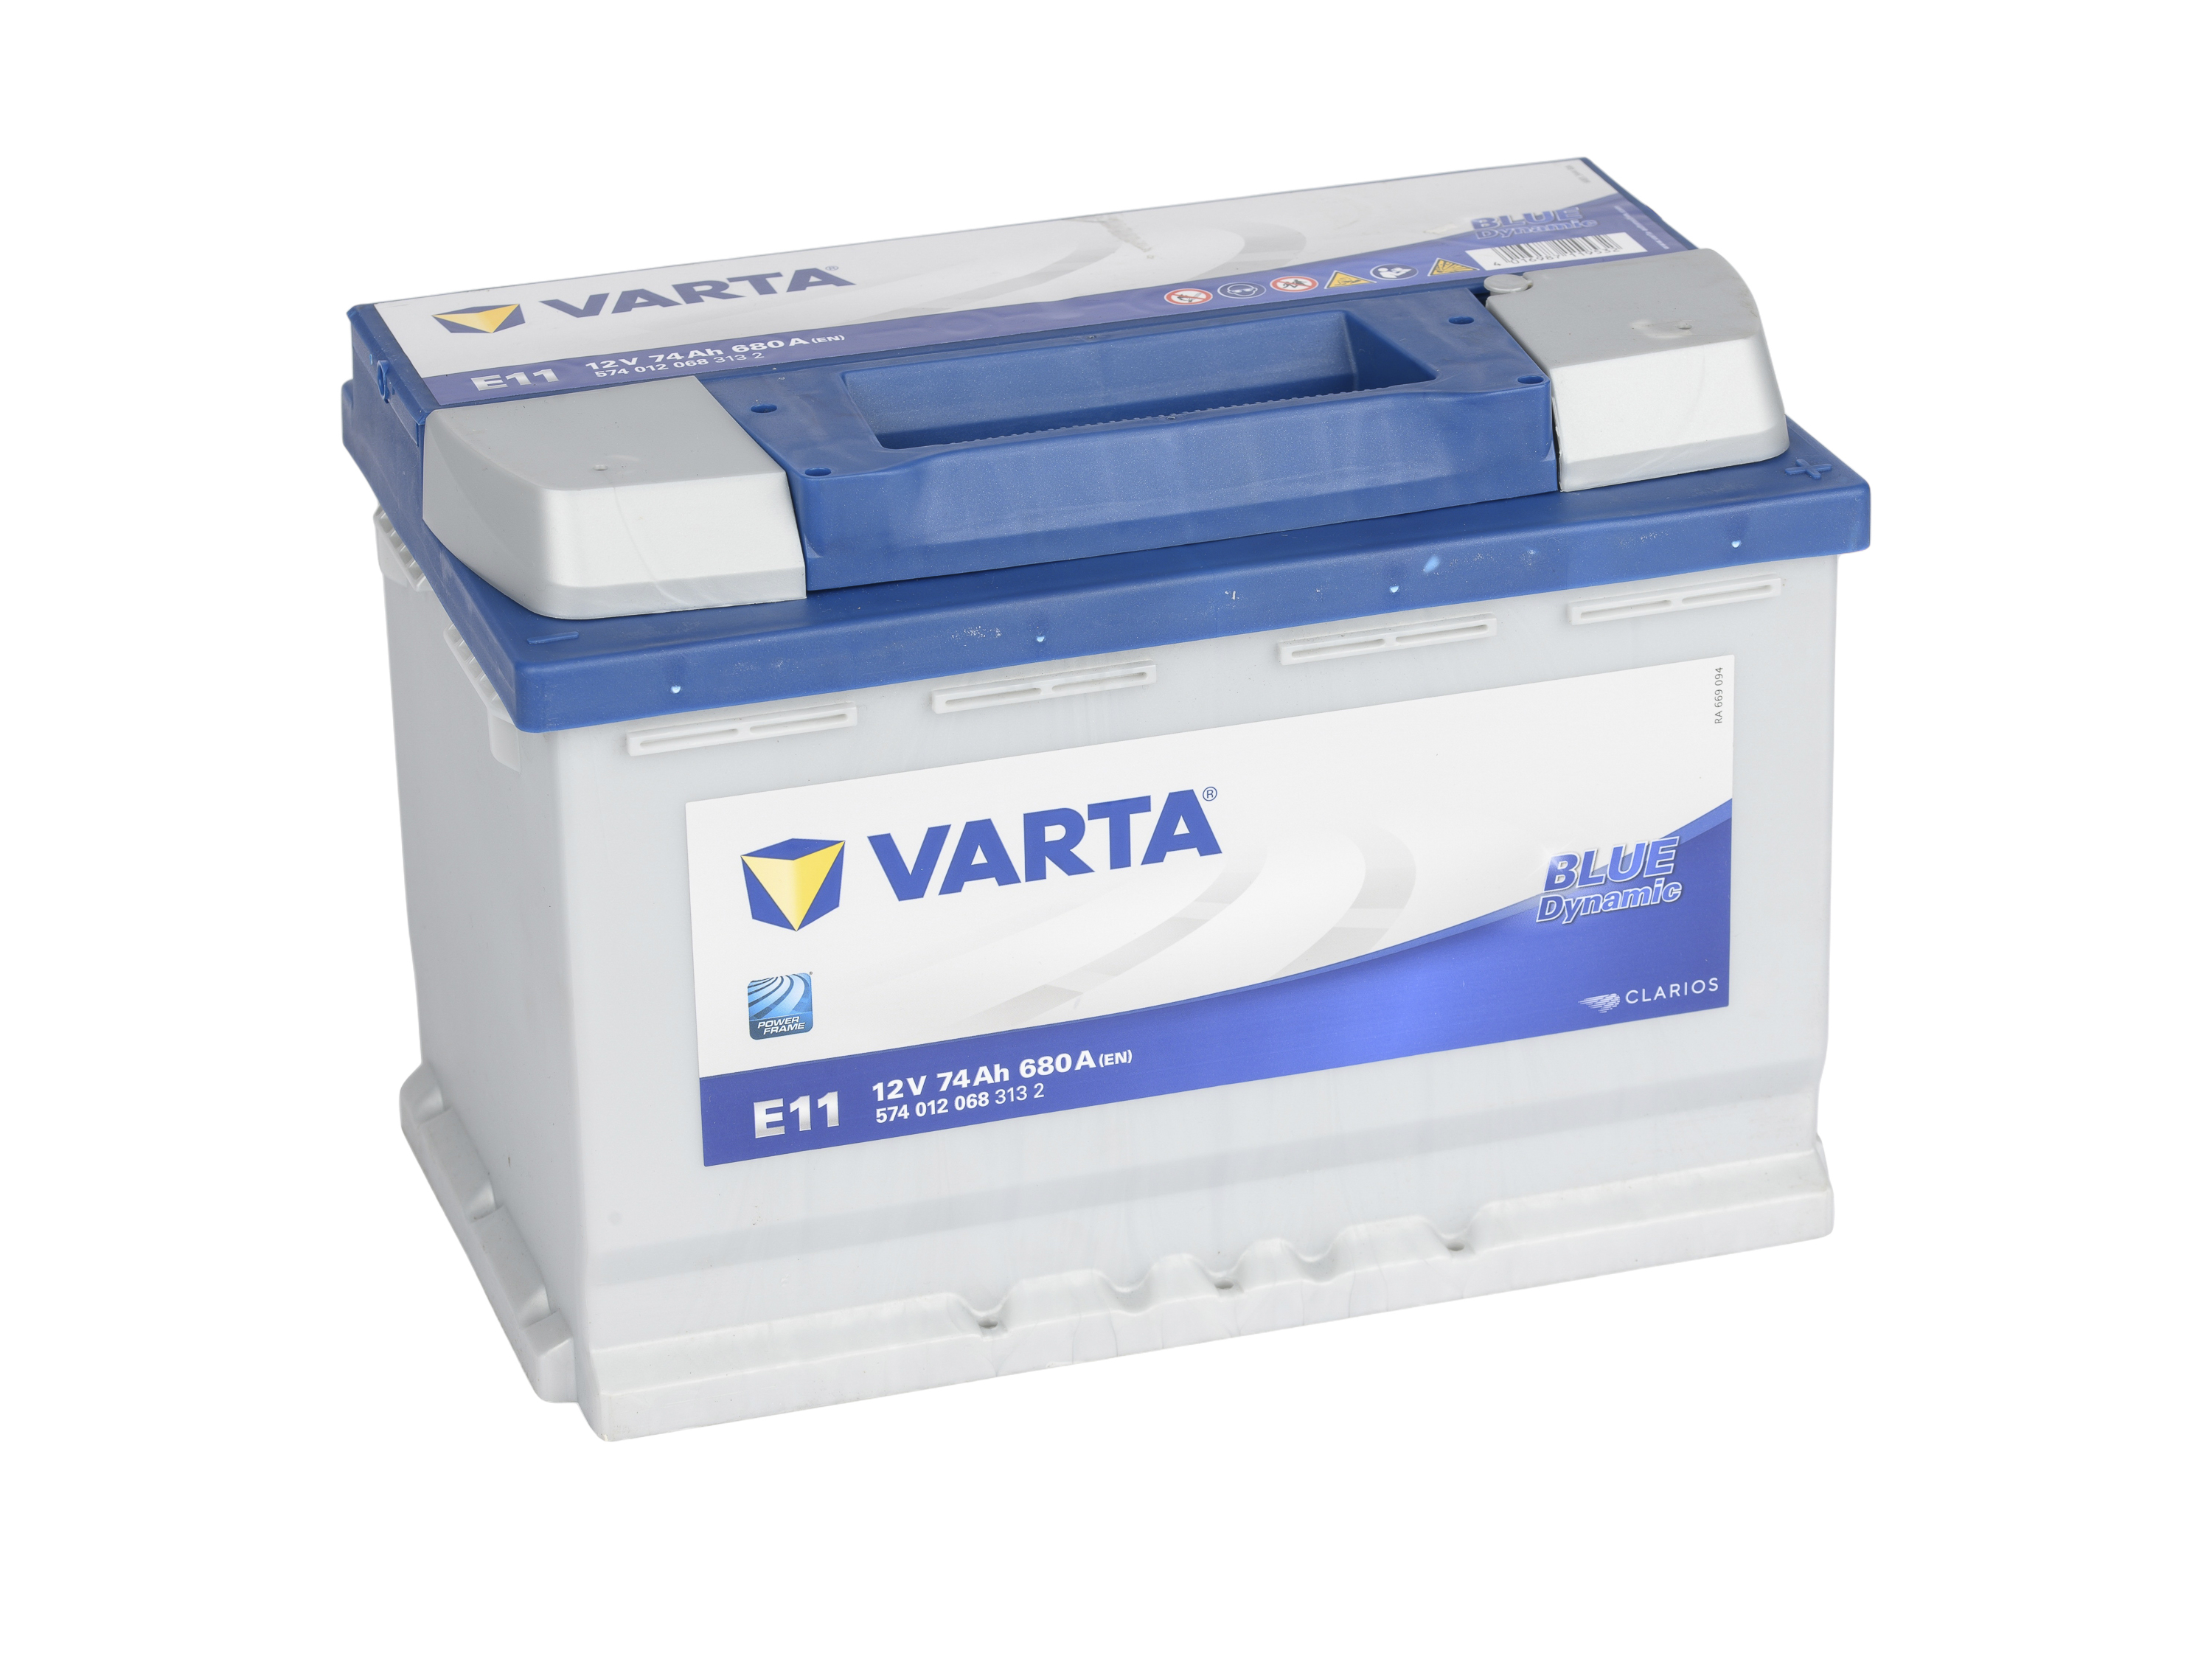 VARTA Batterie Blue Dynamic E11 574.012.068 - 12V/74AH